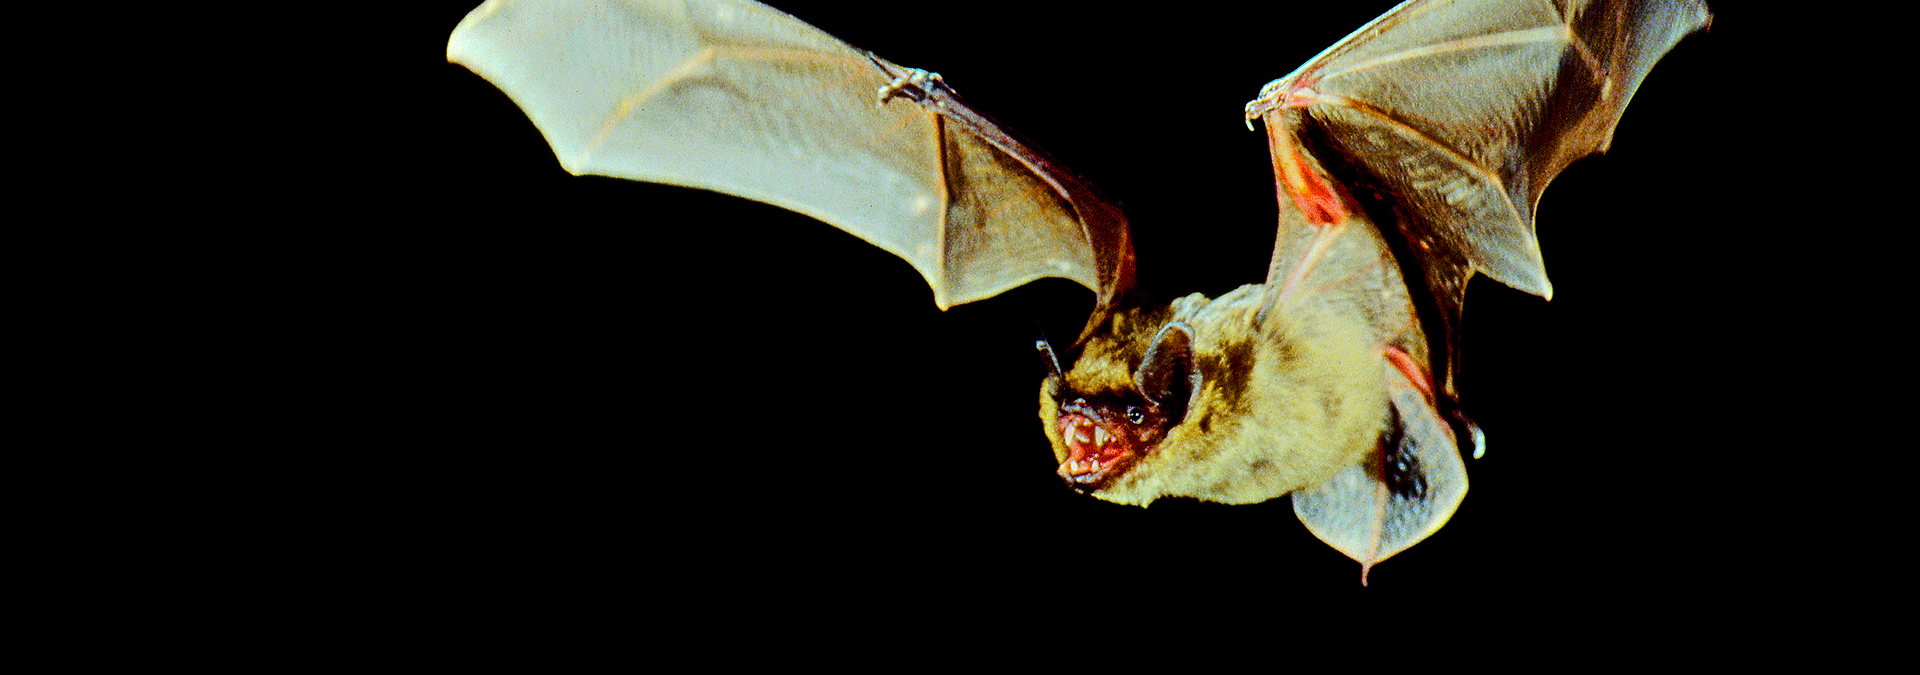 Bat Nat- oplev fantastiske falgermus om natten i Gram Lergrav